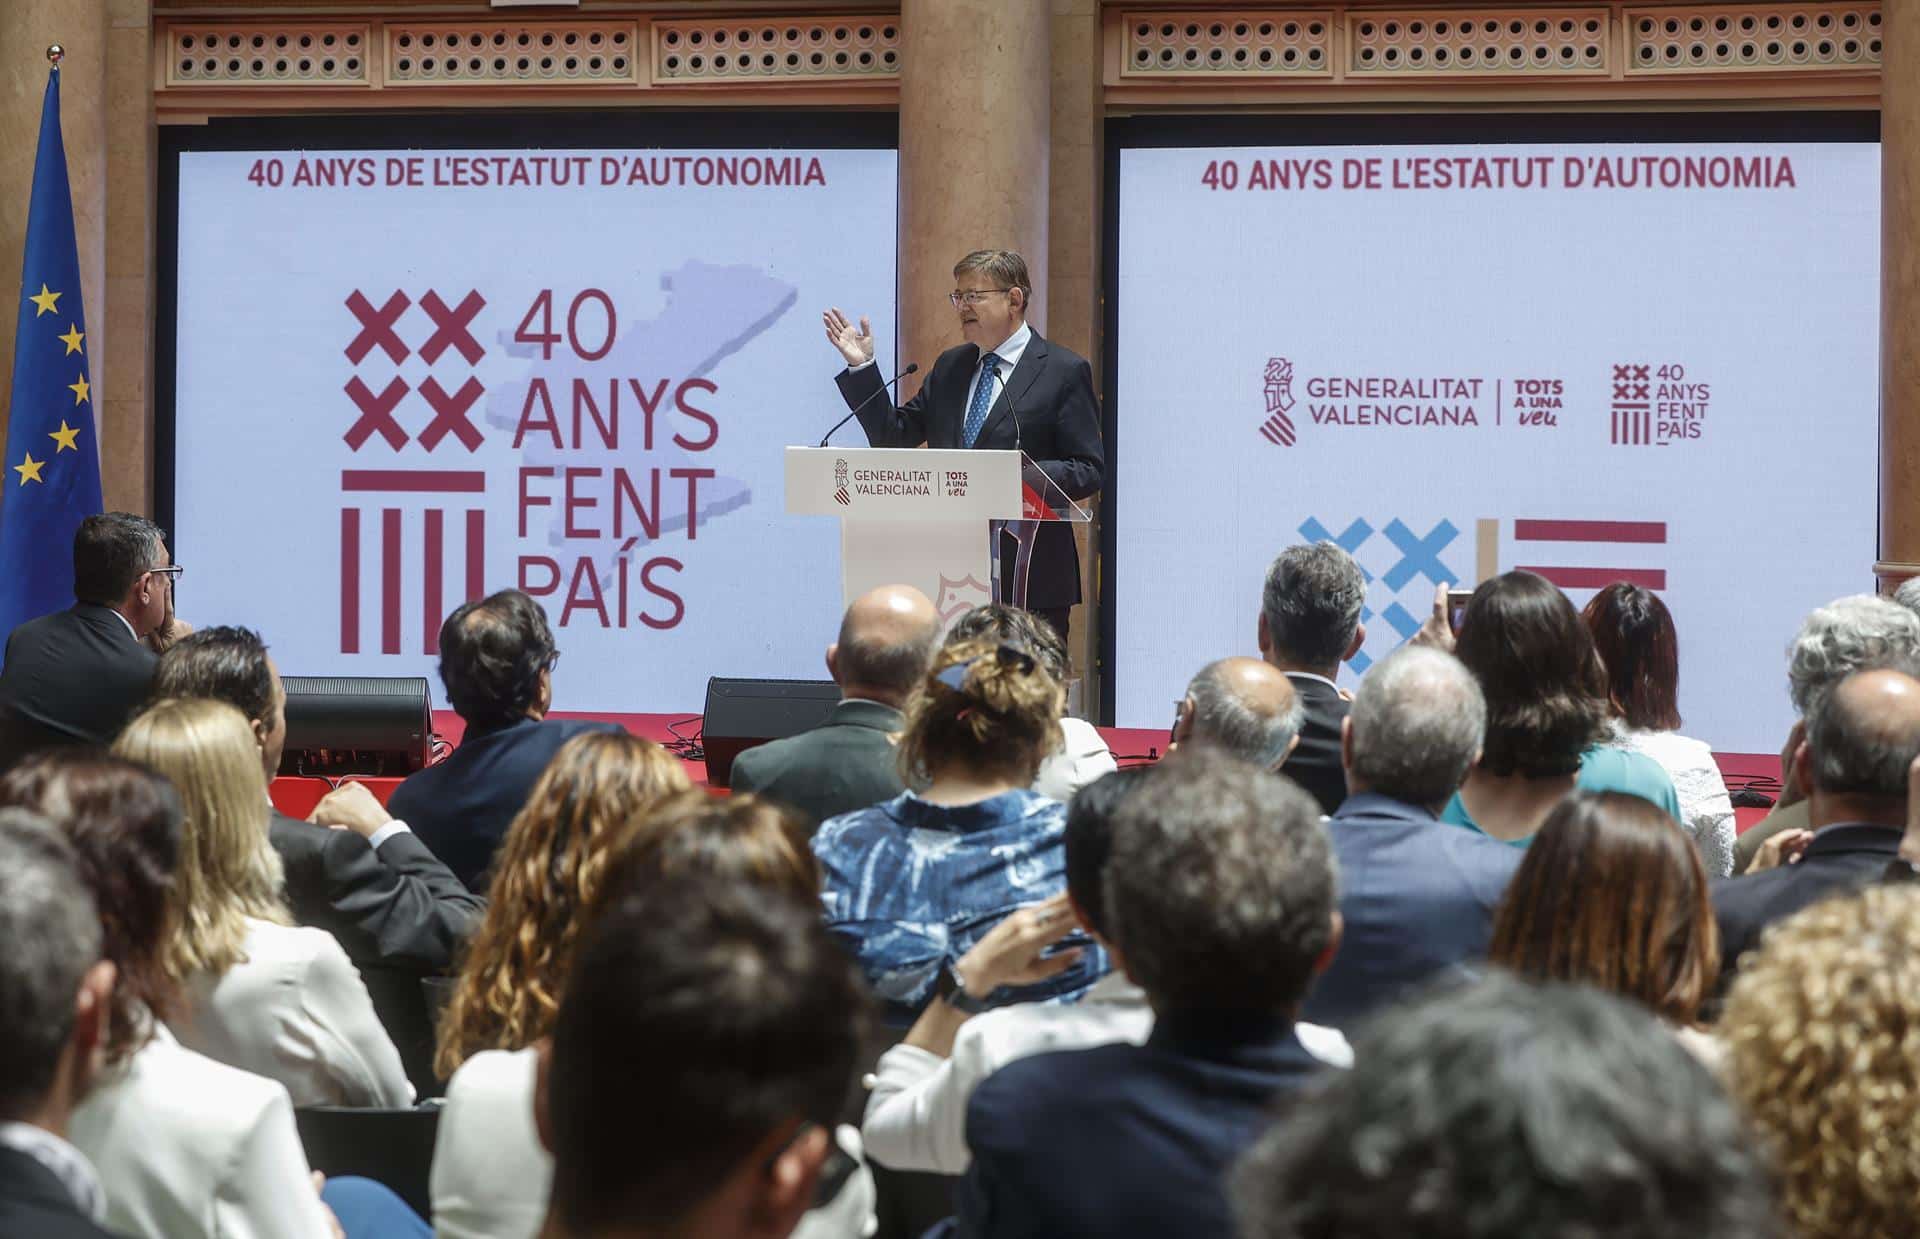 Juristes Valencians lamenta que Puig “haya omitido la recuperación del derecho civil” en el aniversario del Estatut